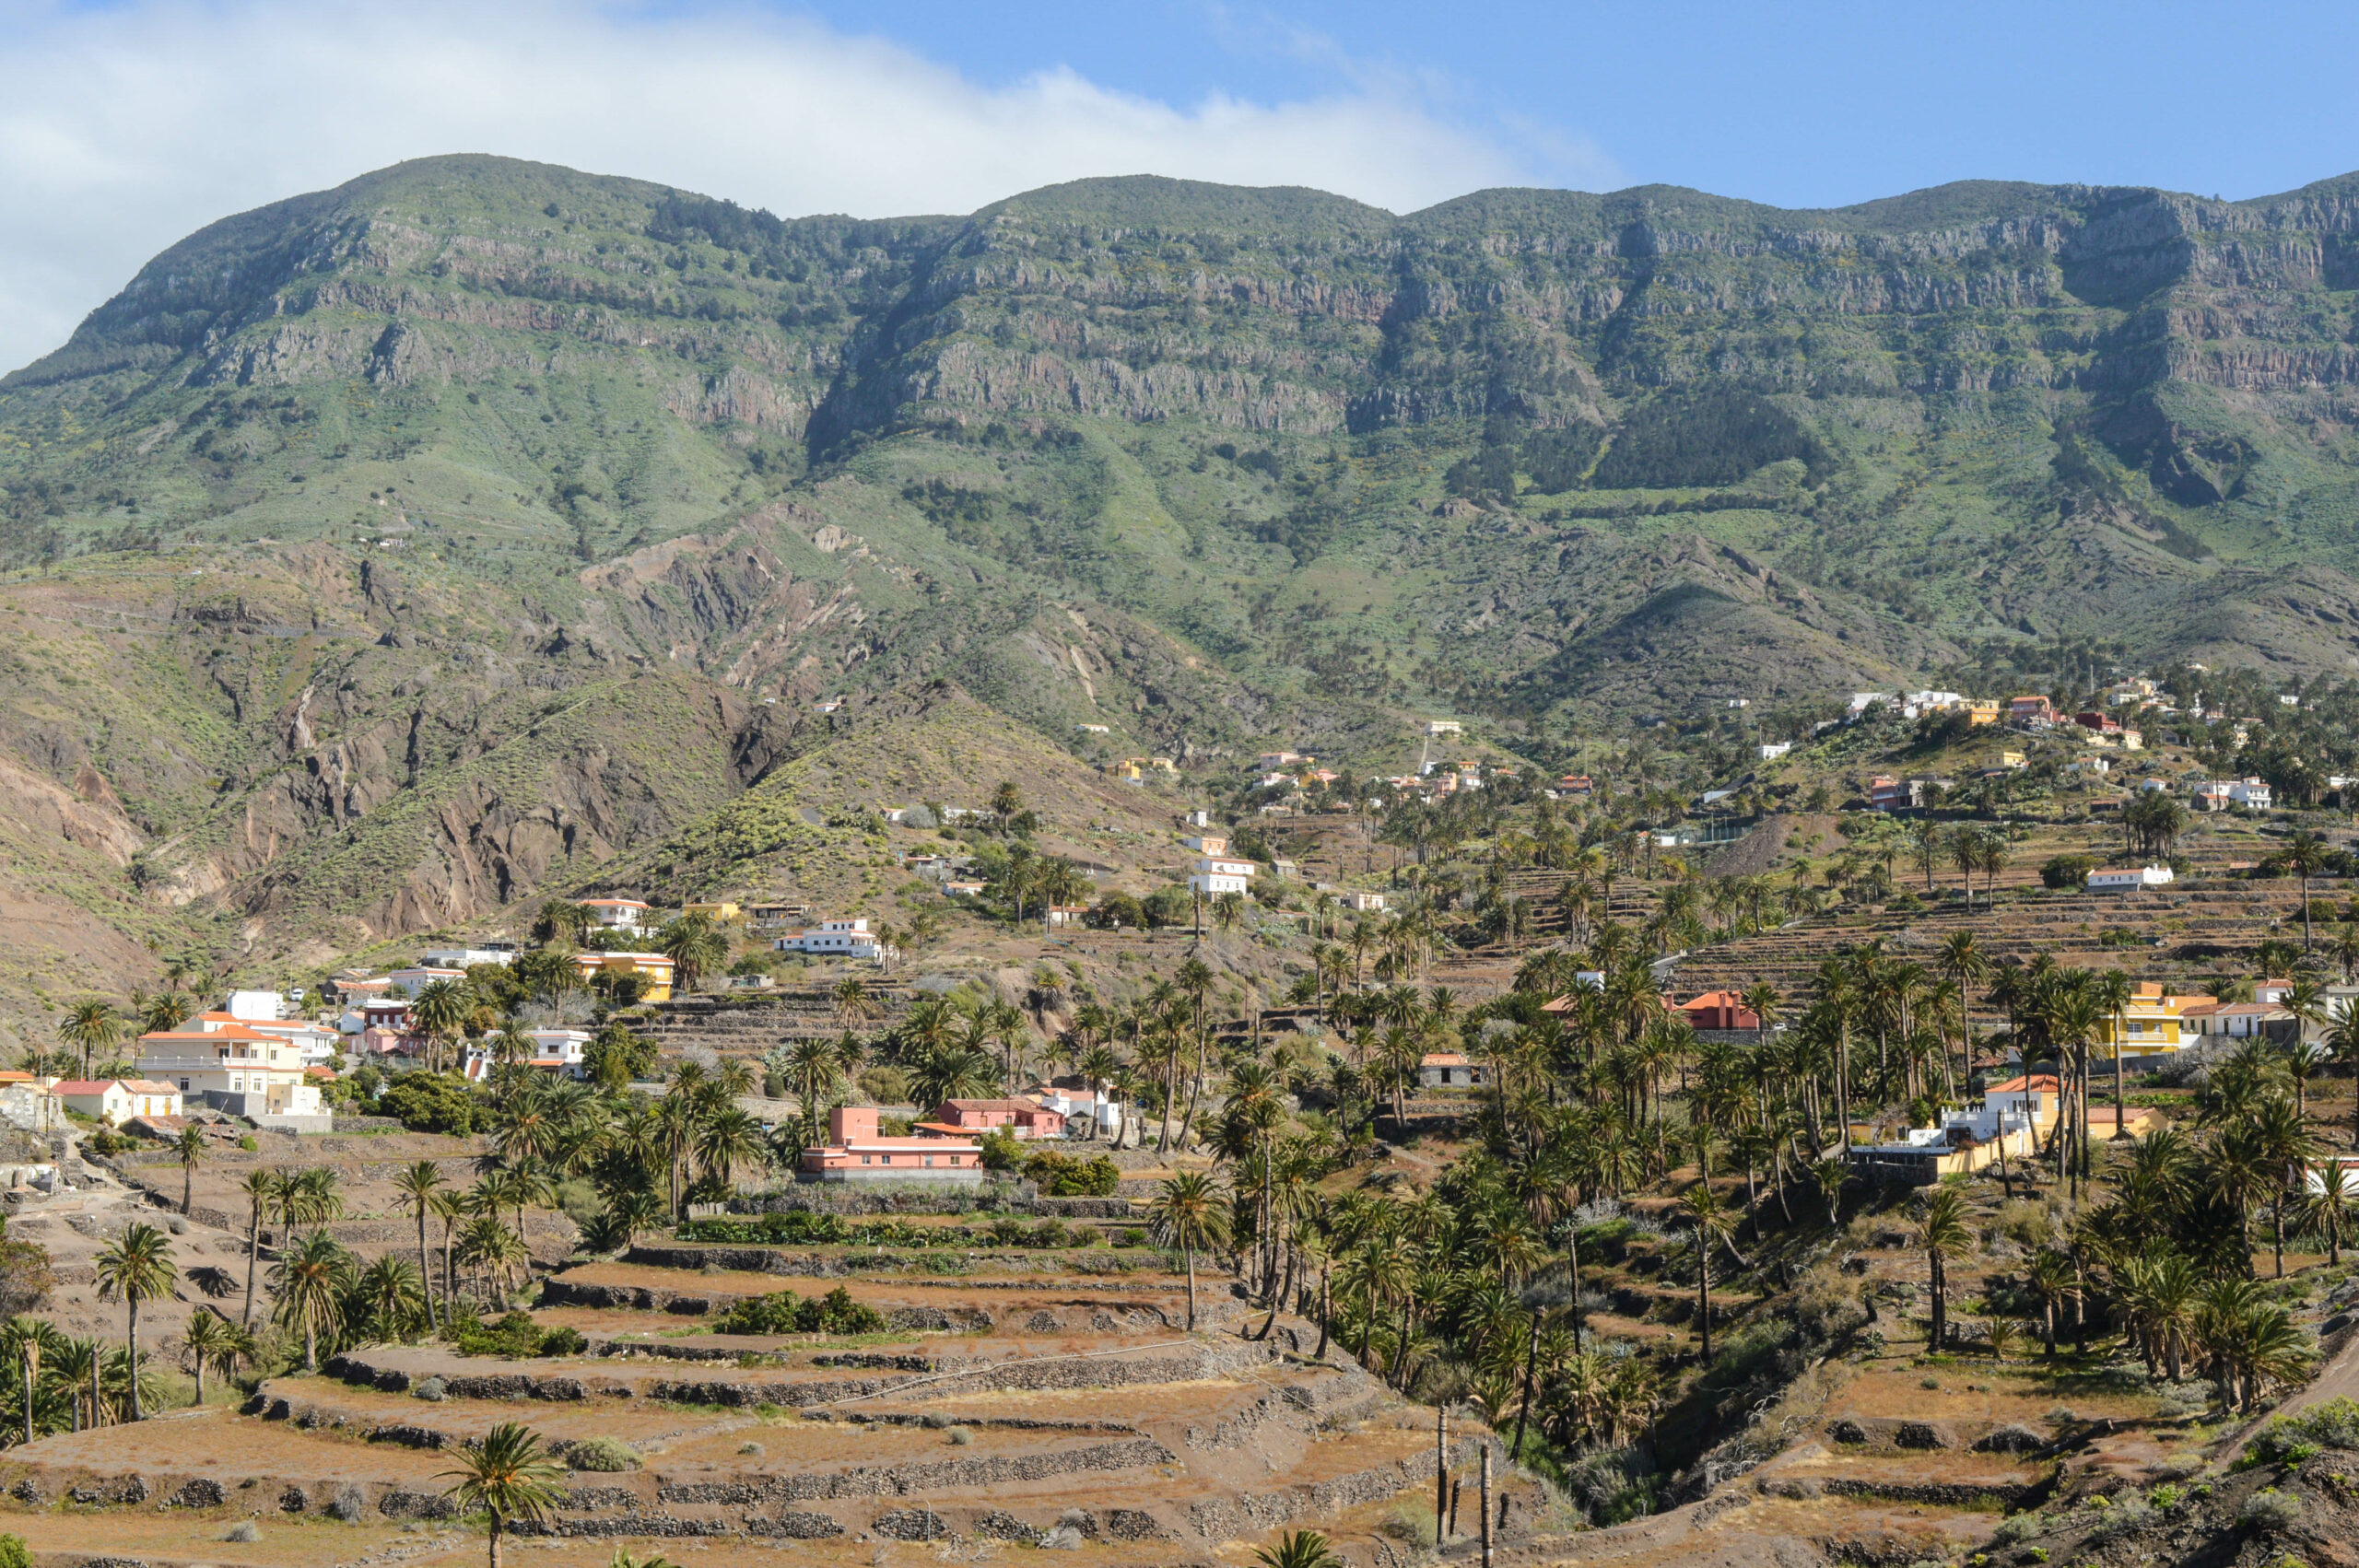 Quelques maisons dans la vallée, ainsi que quelques palmiers, avec les falaises rocheuses derrière, au loin